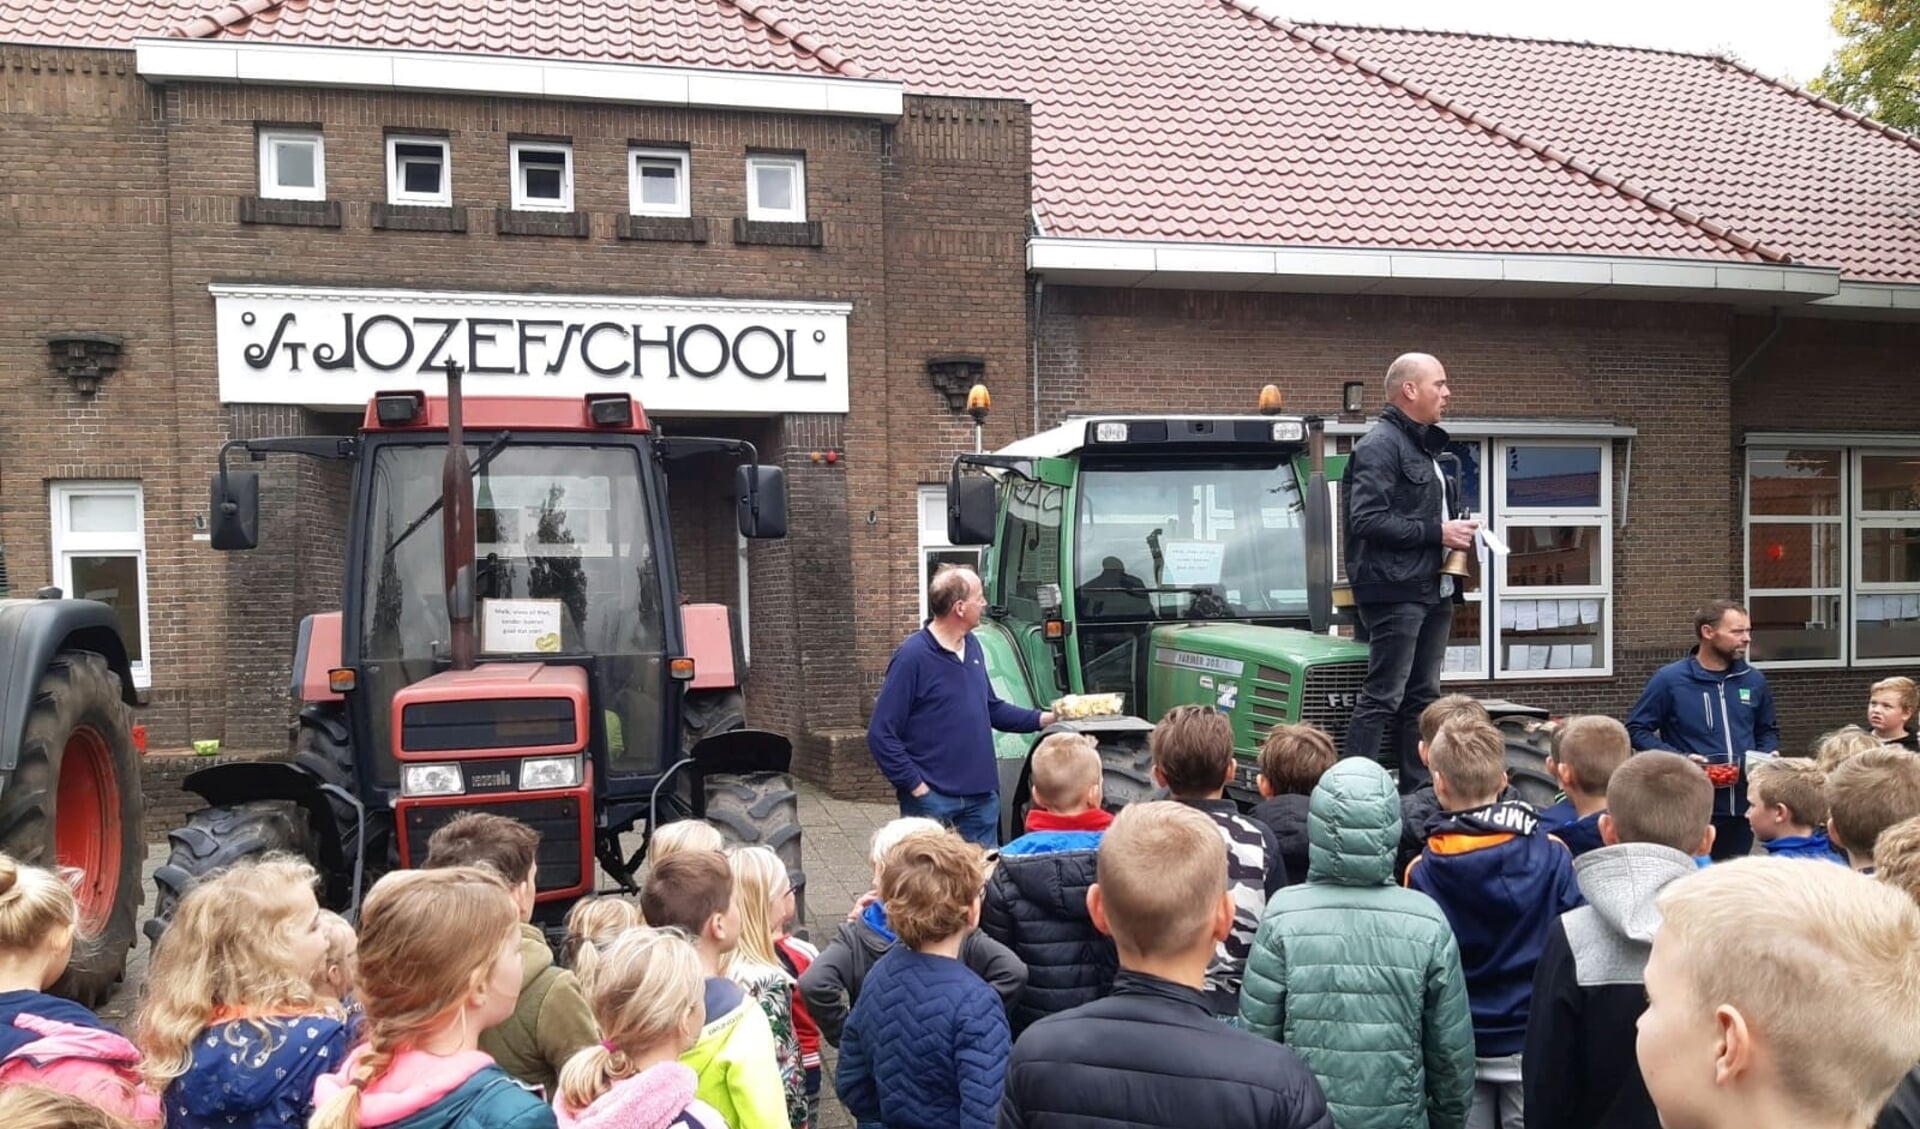 Pascal Klein Holkenborg vertelt de kinderen over de boerenactie. Foto: eigen foto